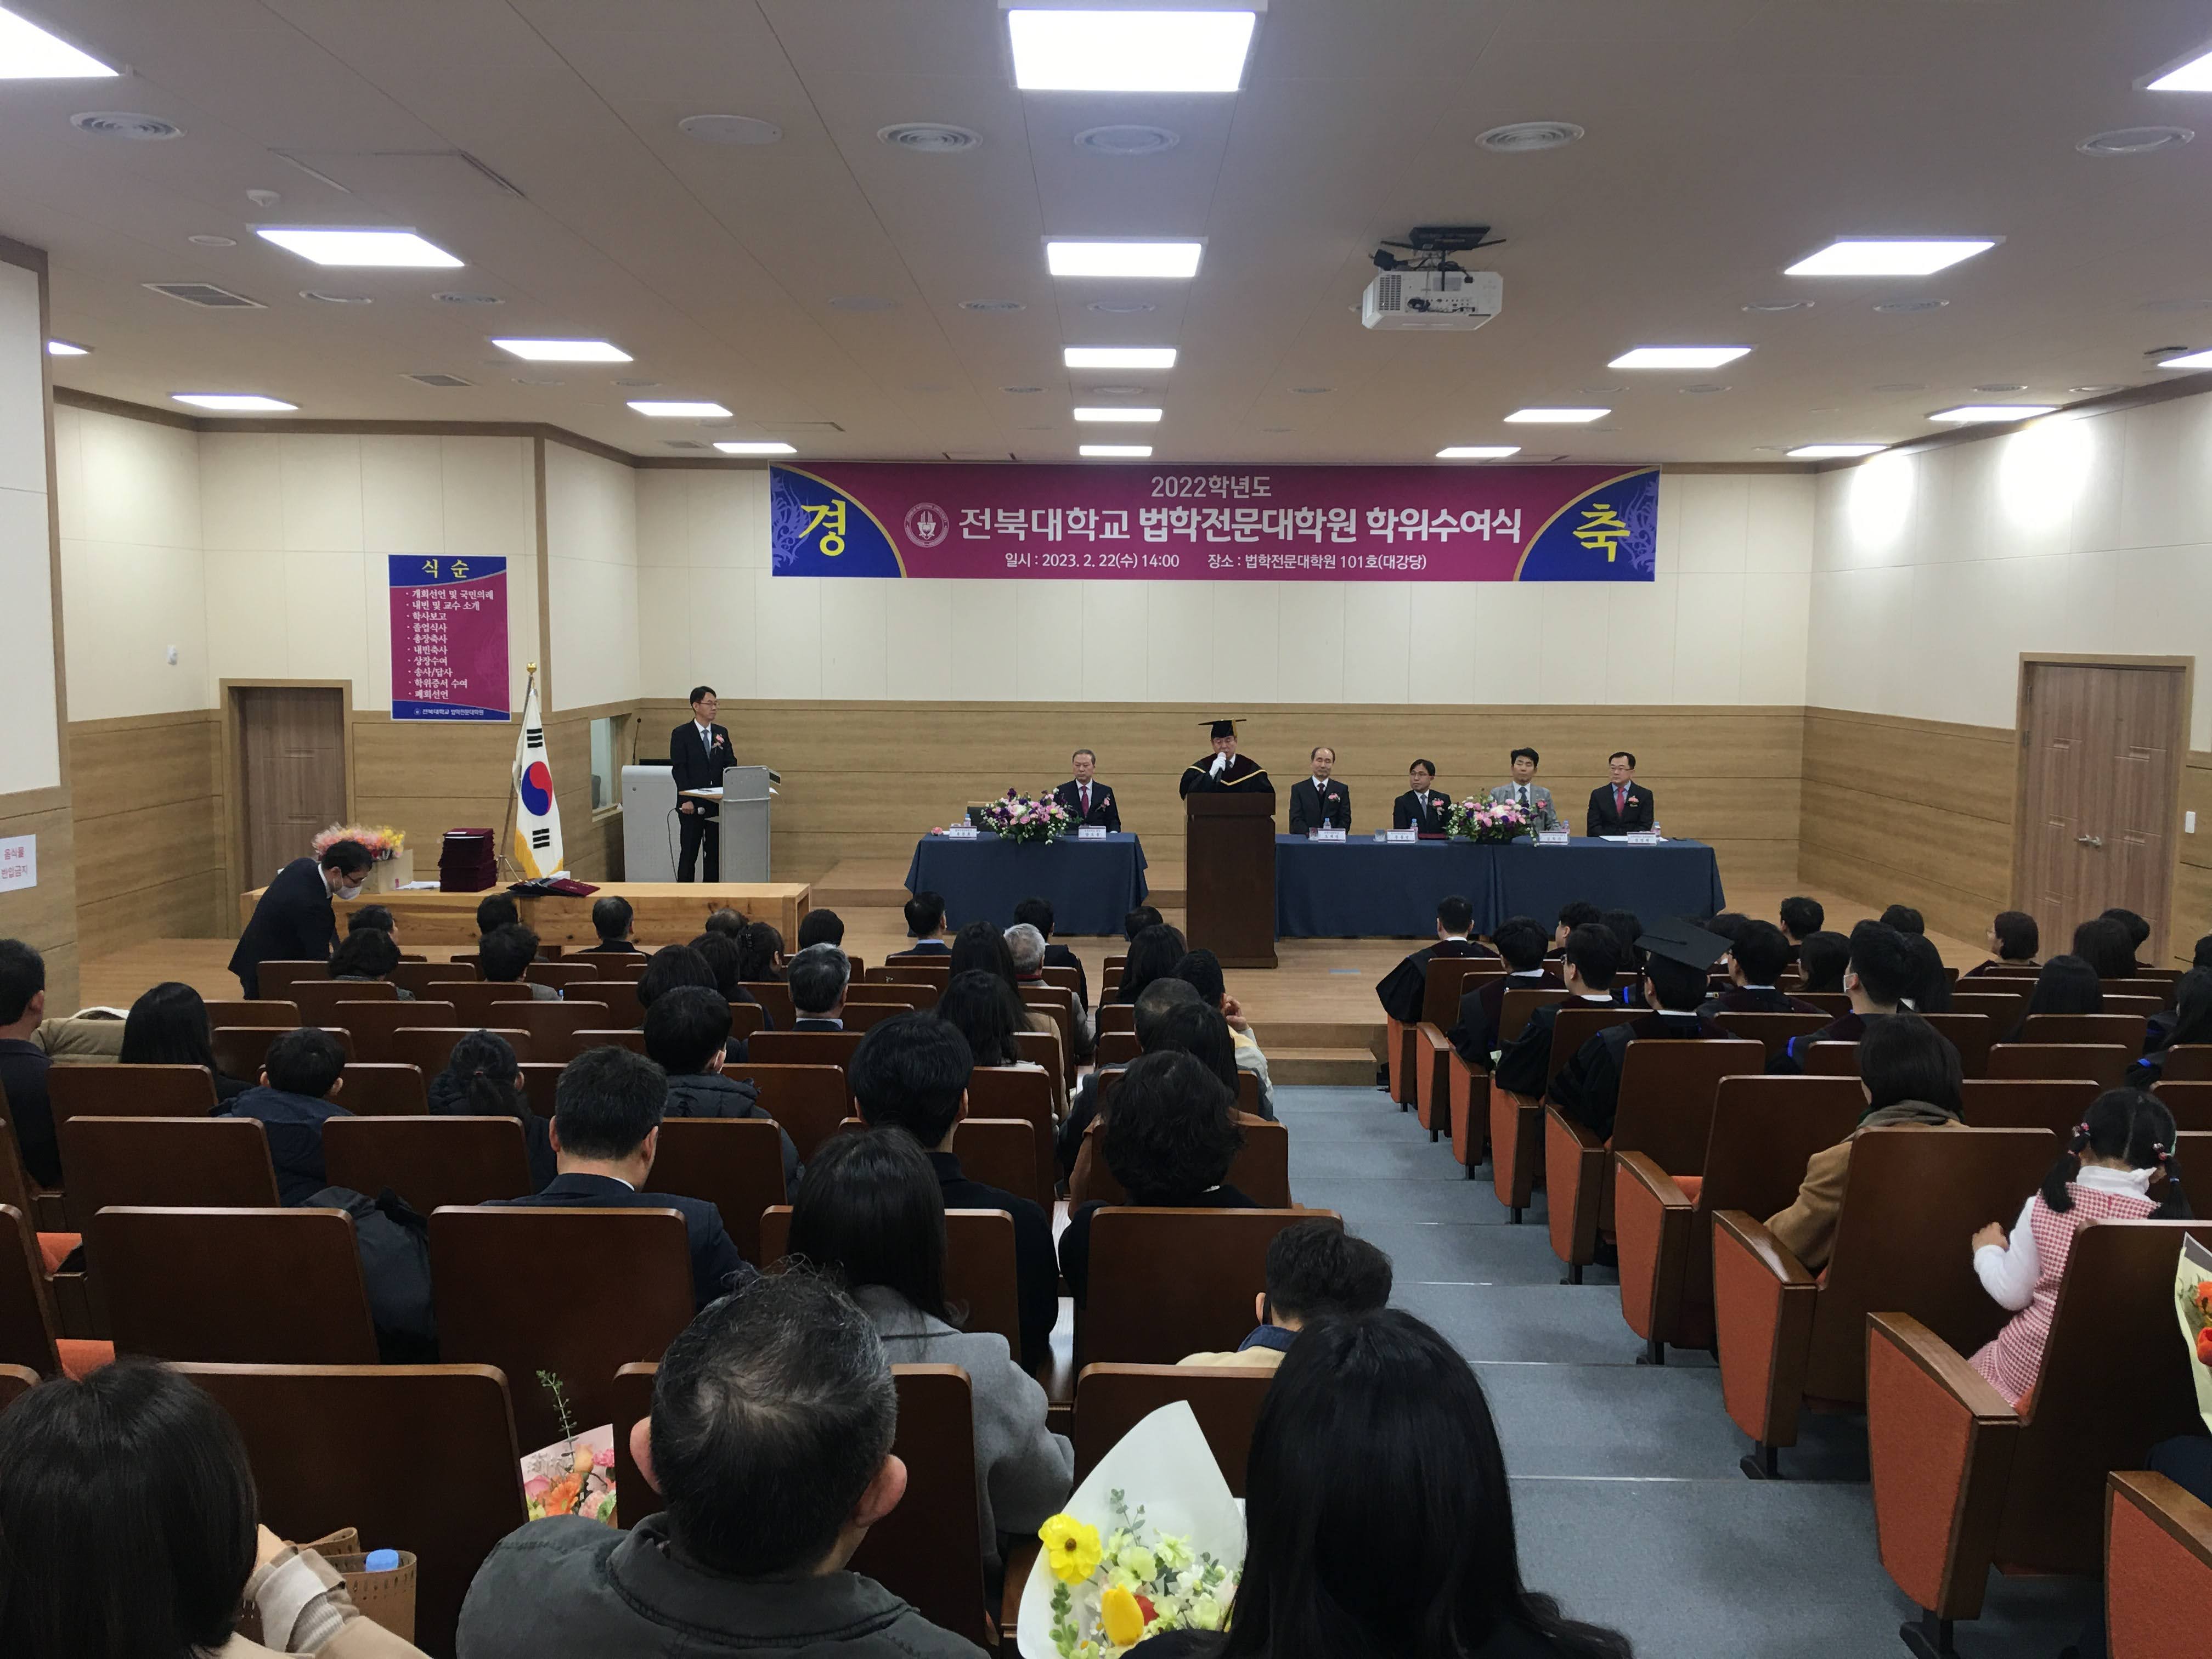 뉴스/사진 - 2022학년도 전기 법학전문대학원 학위수여식